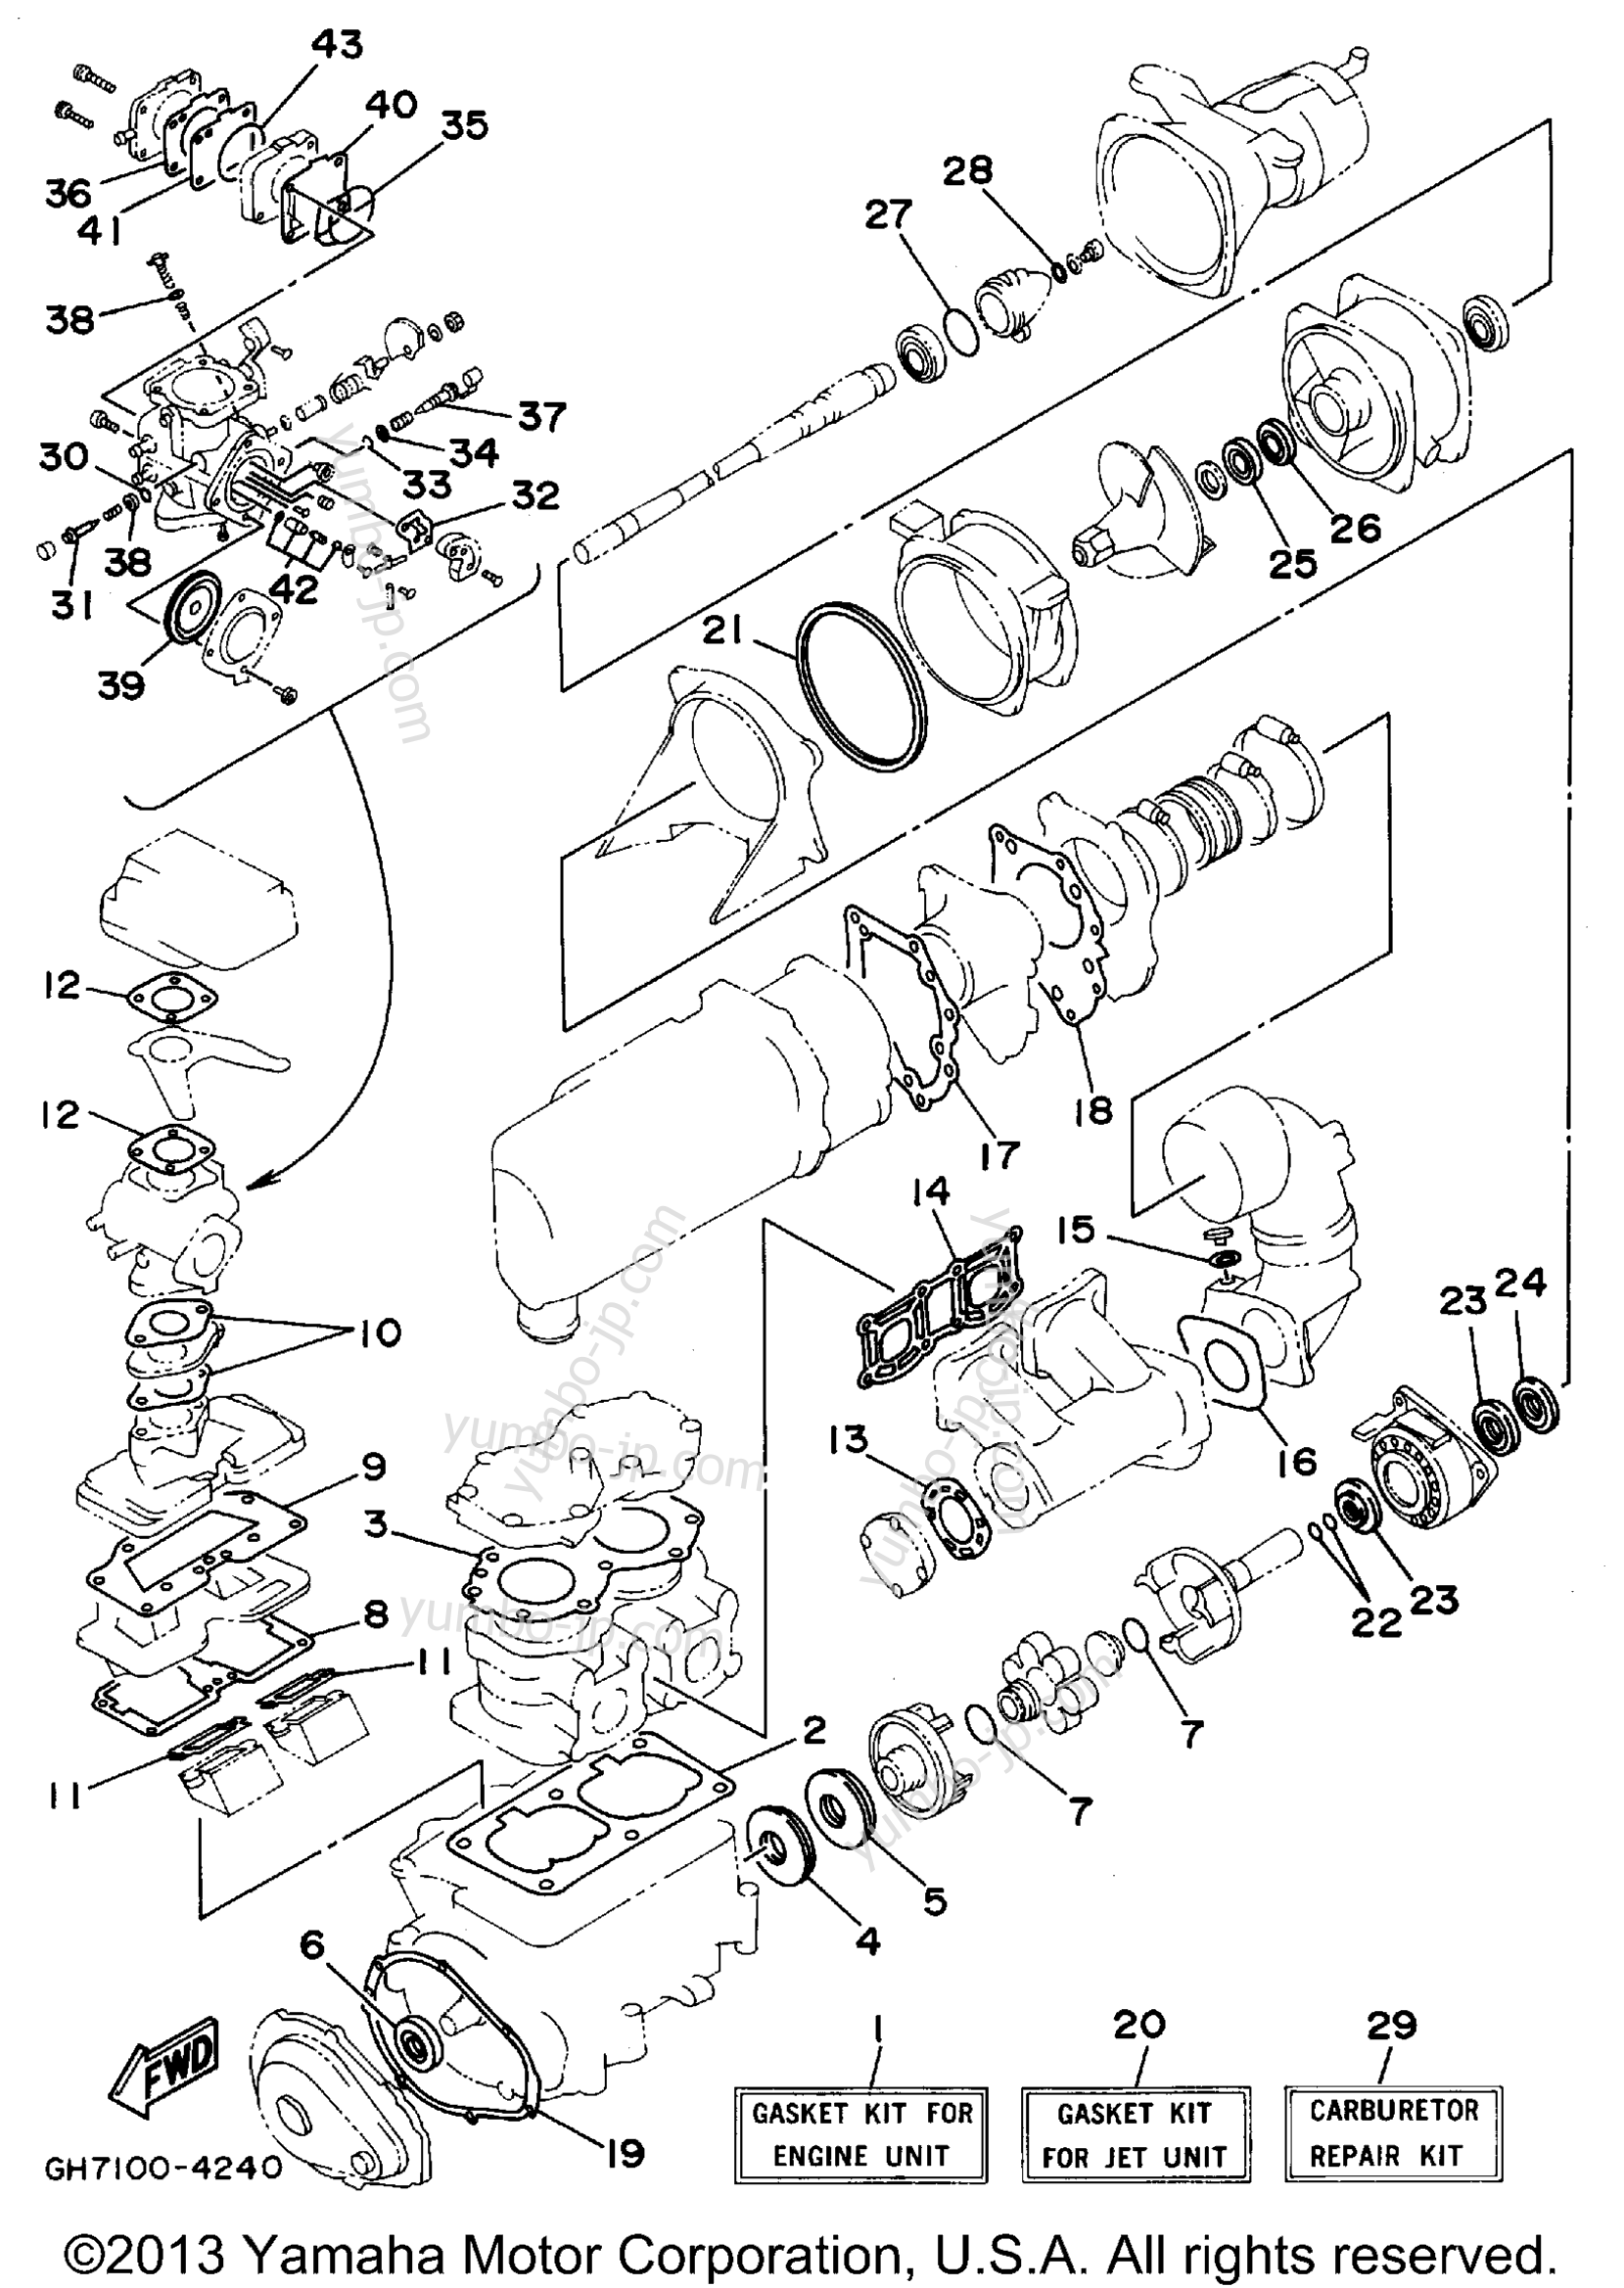 Ремкомплект / Набор прокладок для гидроциклов YAMAHA SUPER JET (SJ700T) 1995 г.